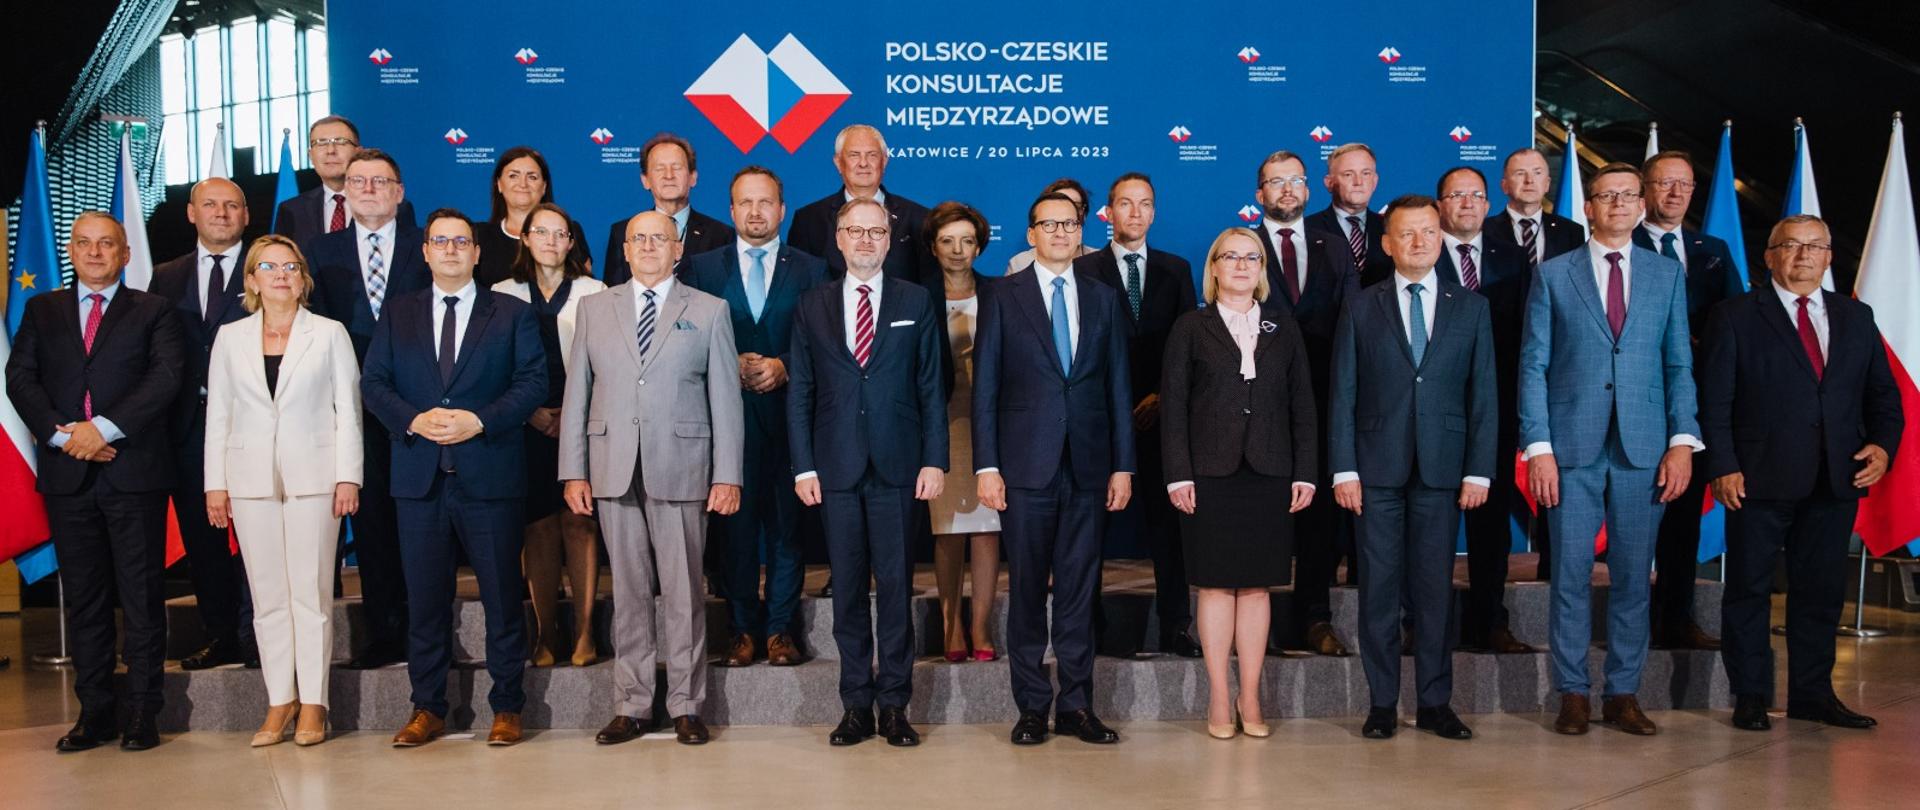 Premier Mateusz Morawiecki oraz delegacje podczas międzyrządowych konsultacji polsko-czeskich w Katowicach.